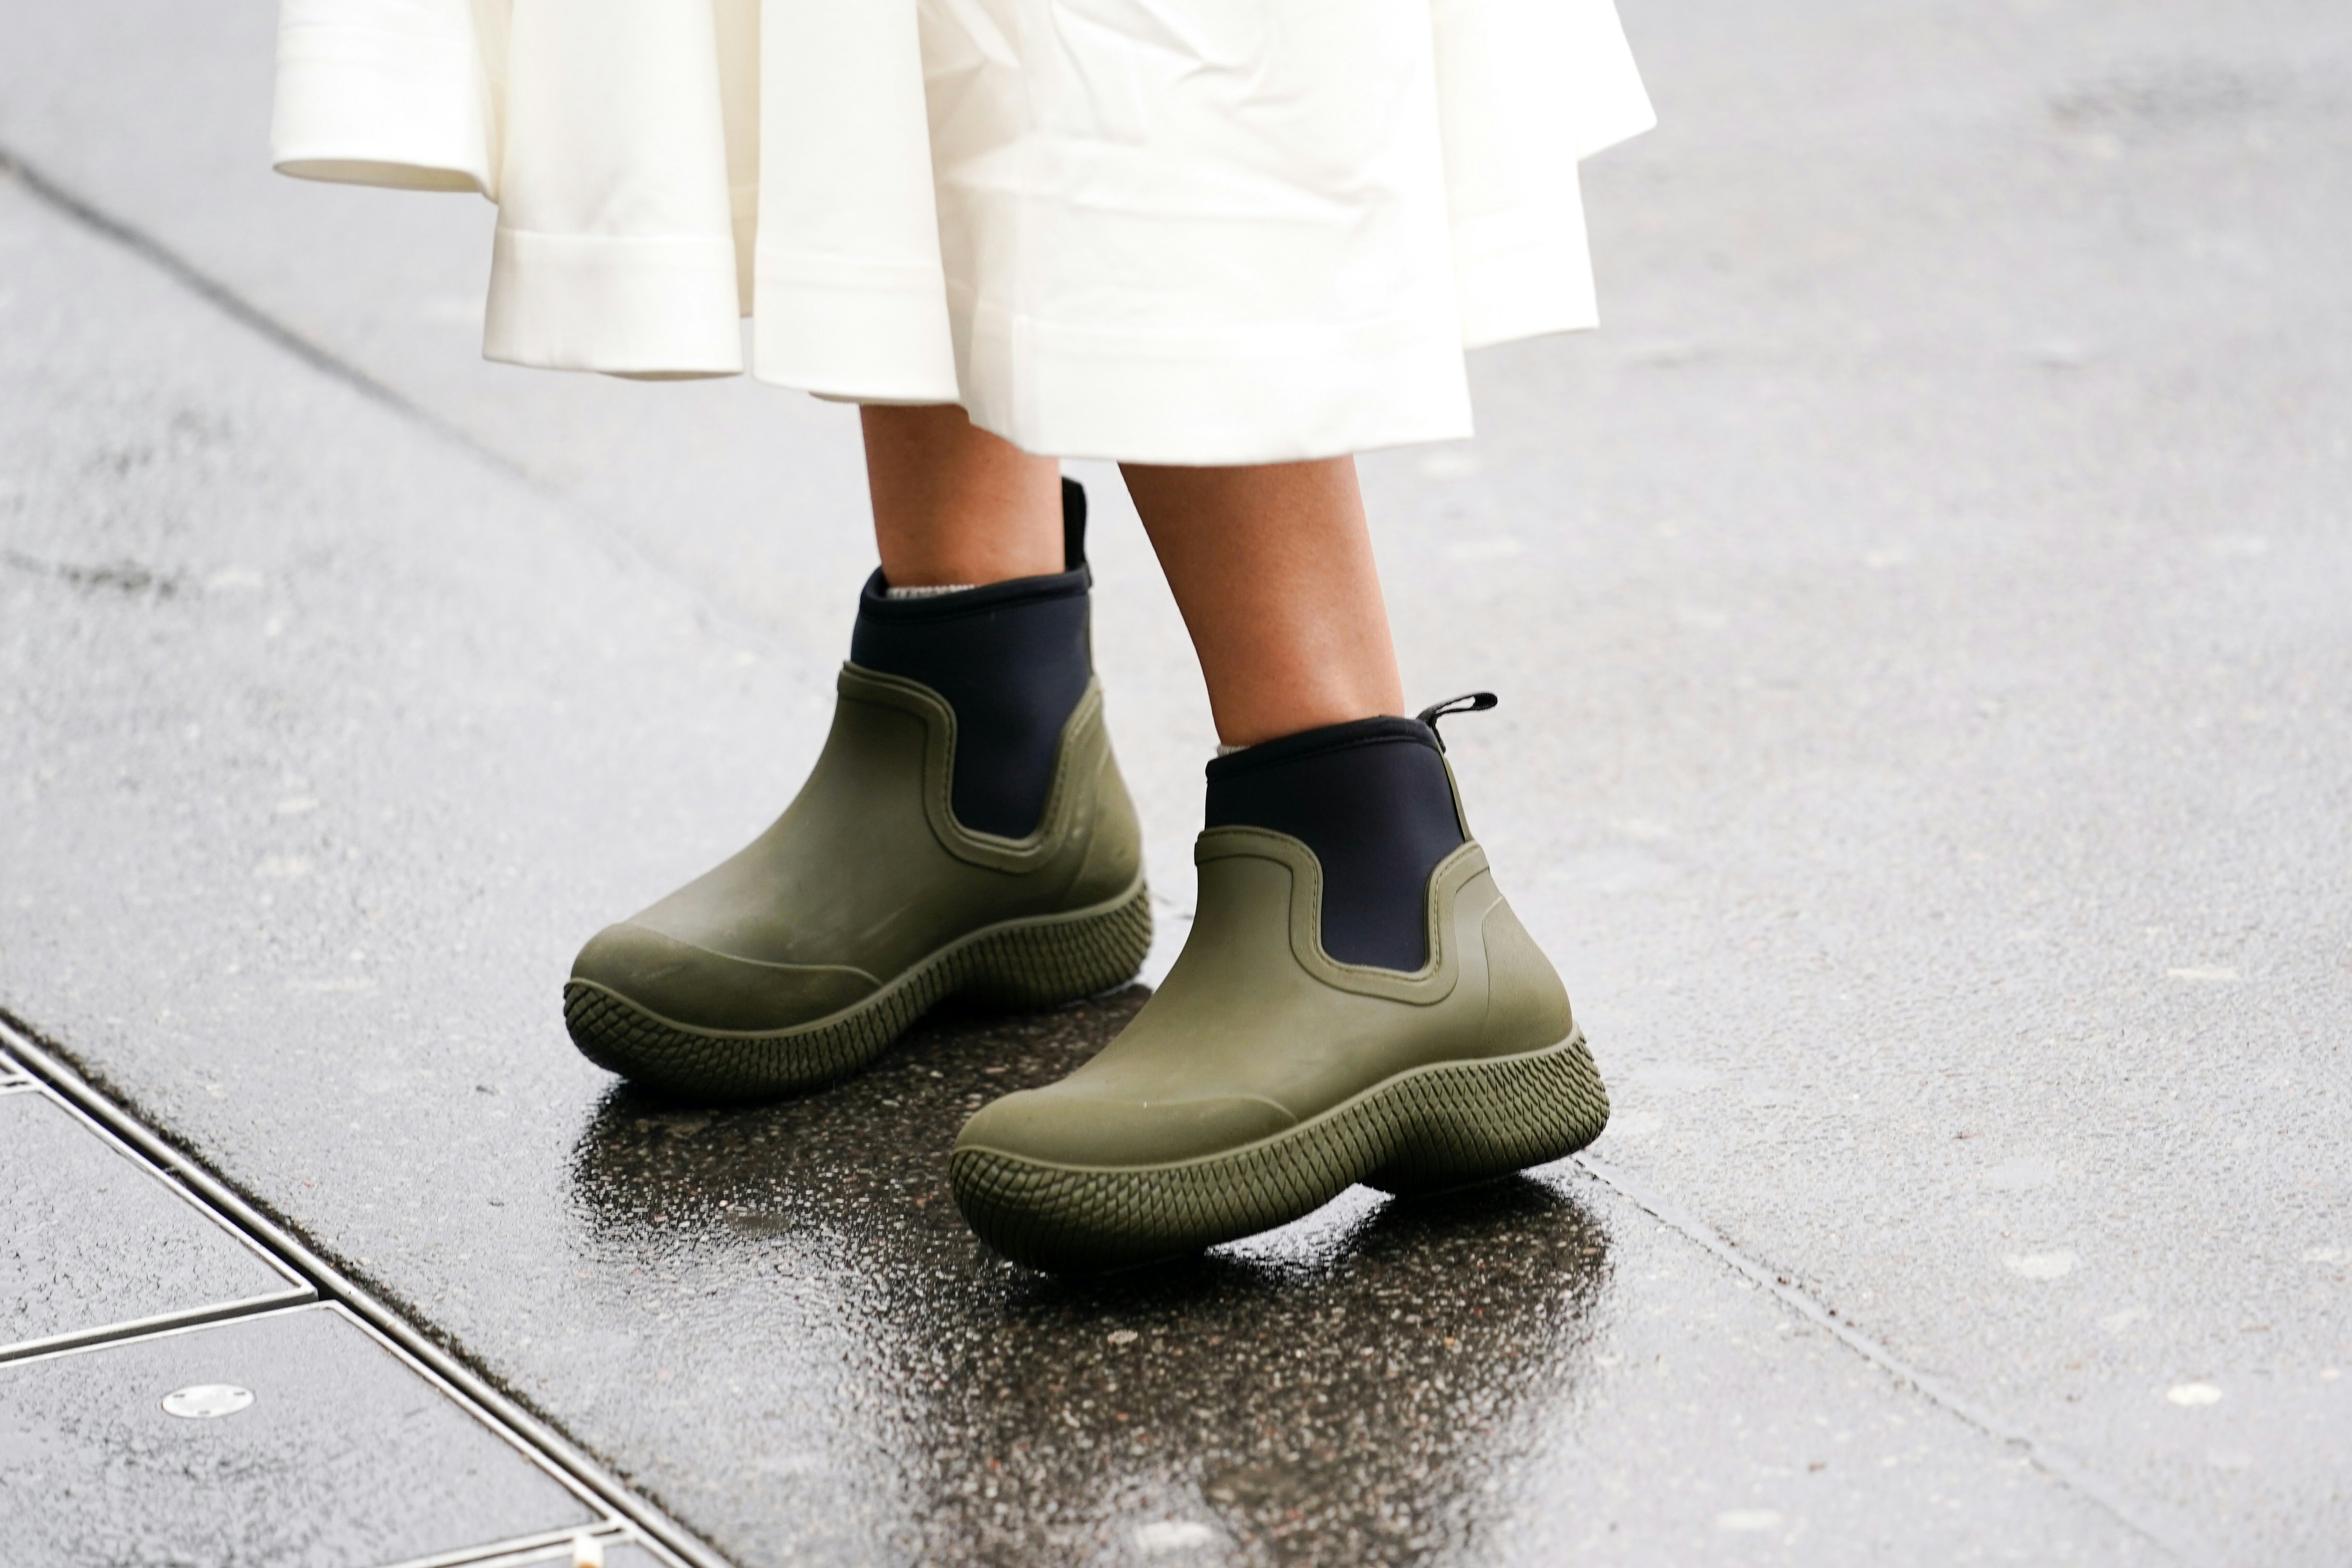 high fashion rain boots